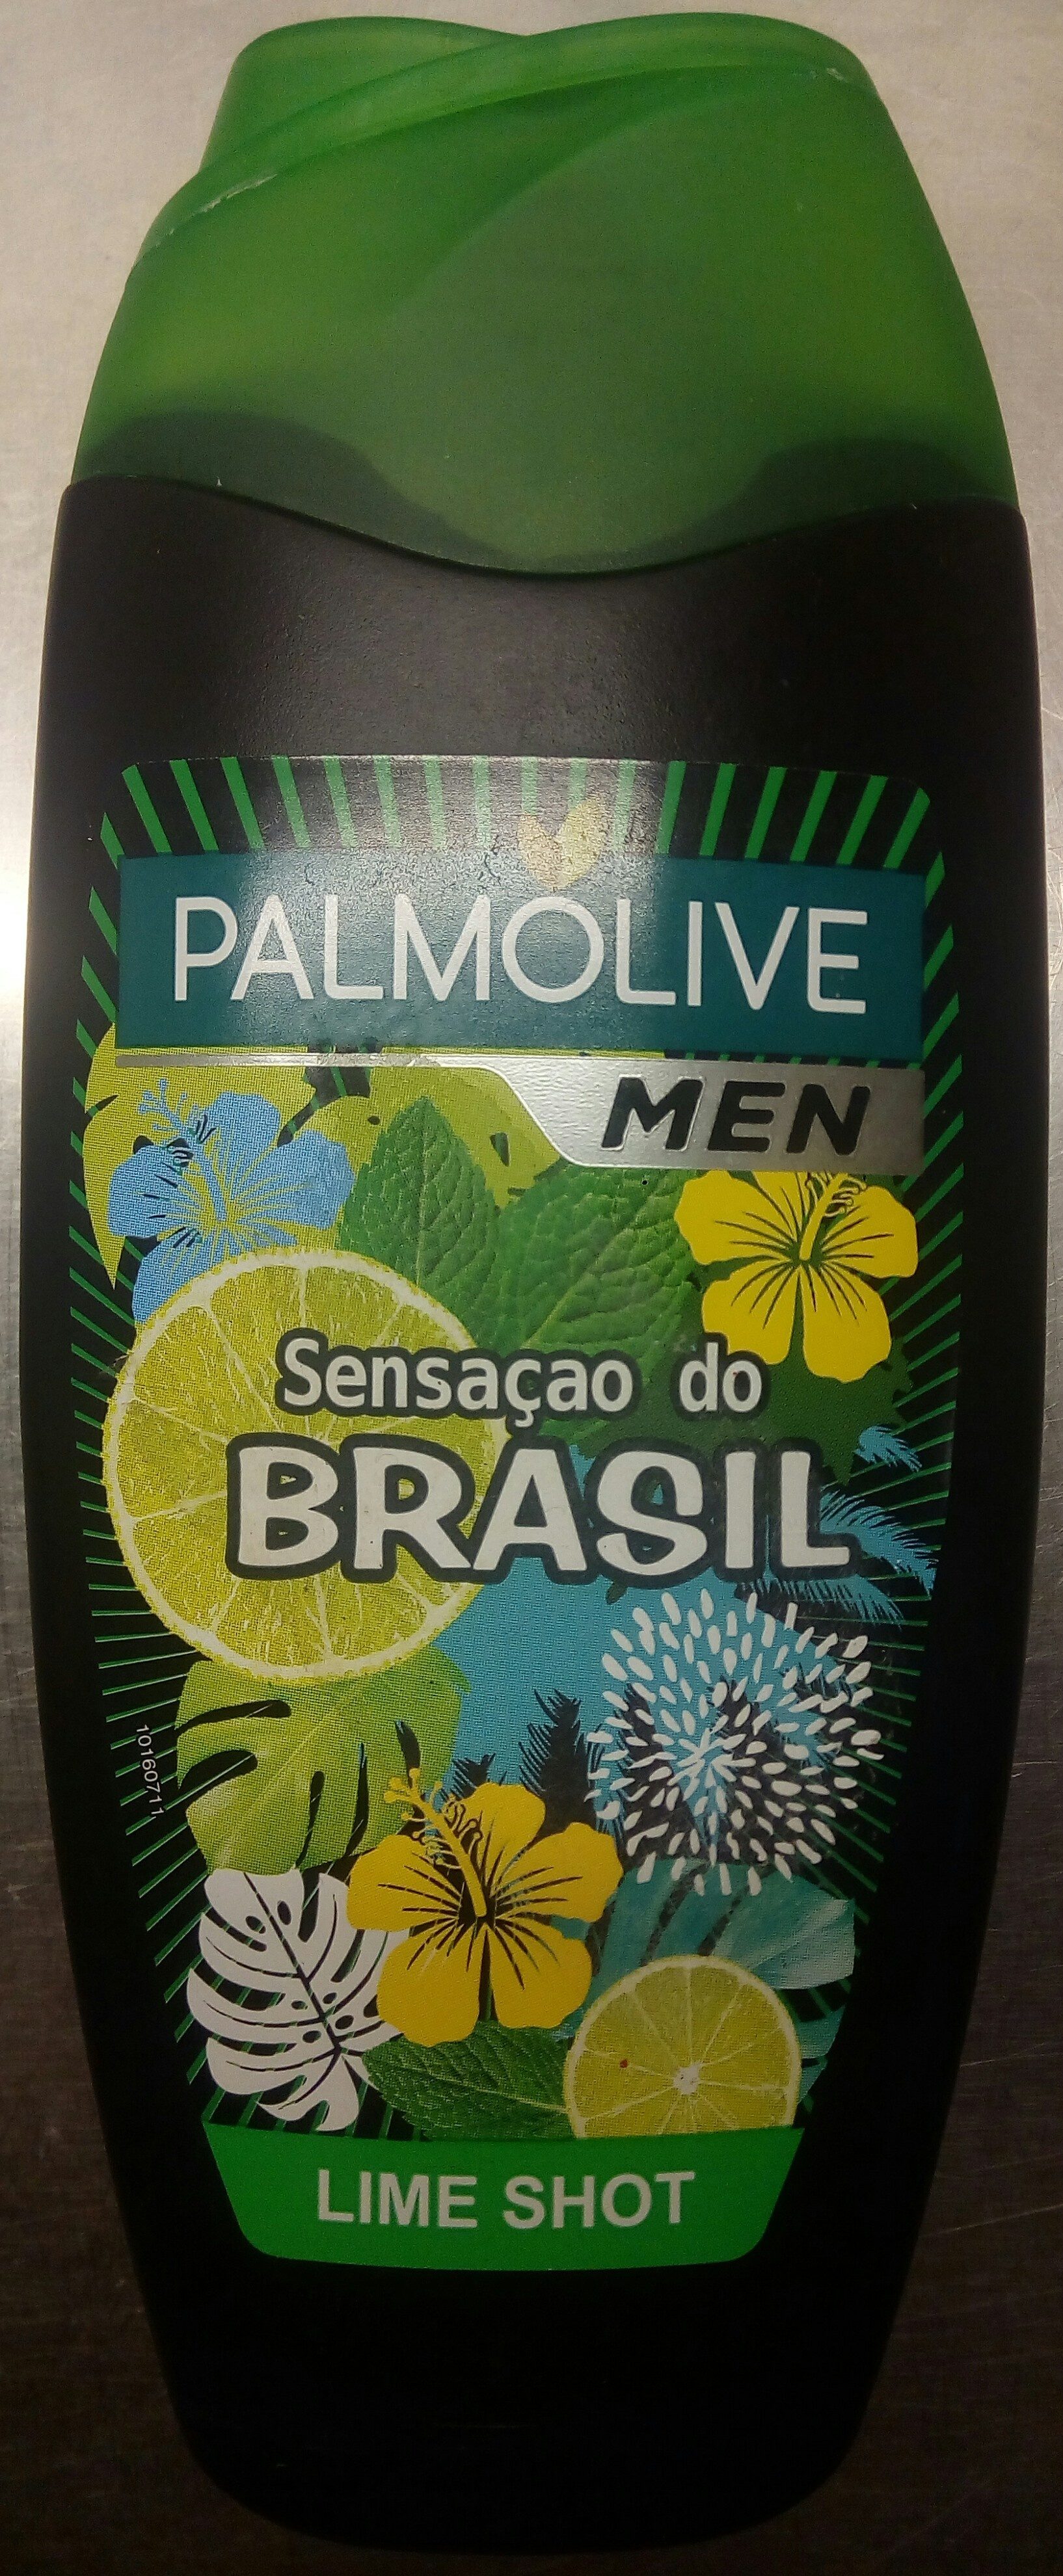 Palmolive Men Sensaçao do Brasil Lime Shot - Product - en